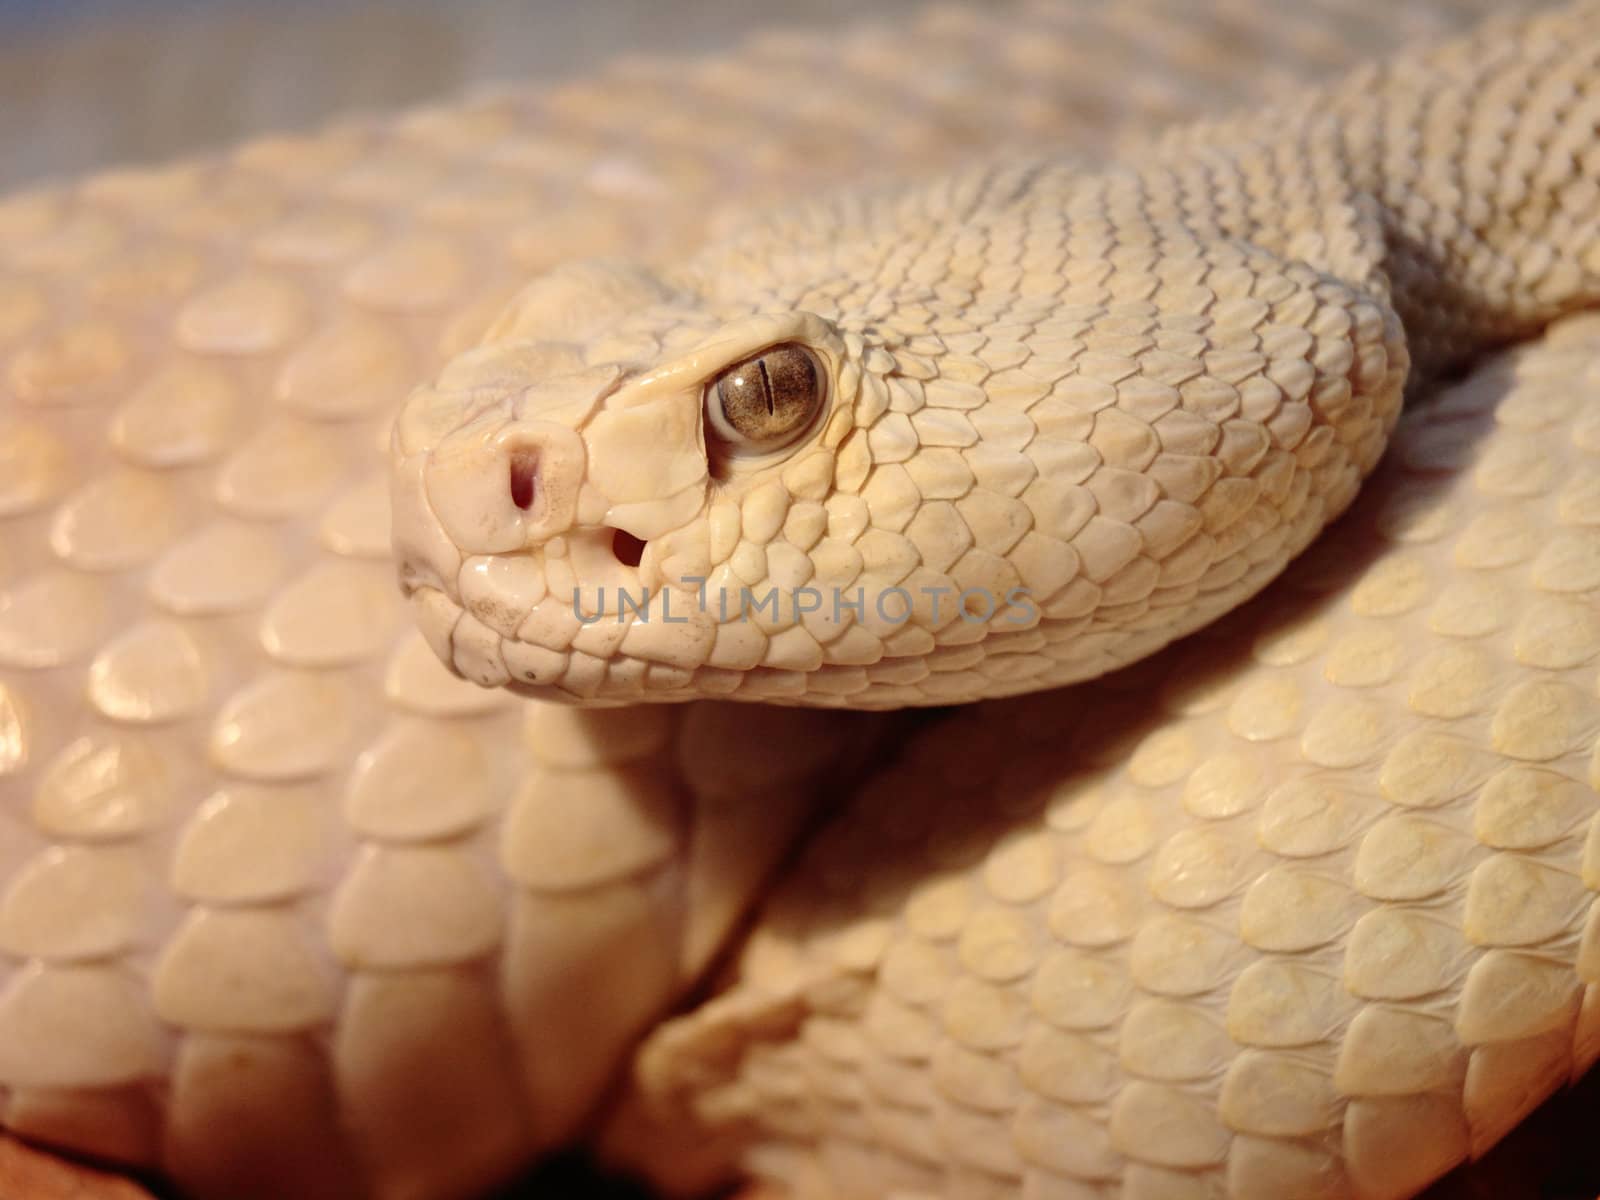 picture of a venomous dangerous snake